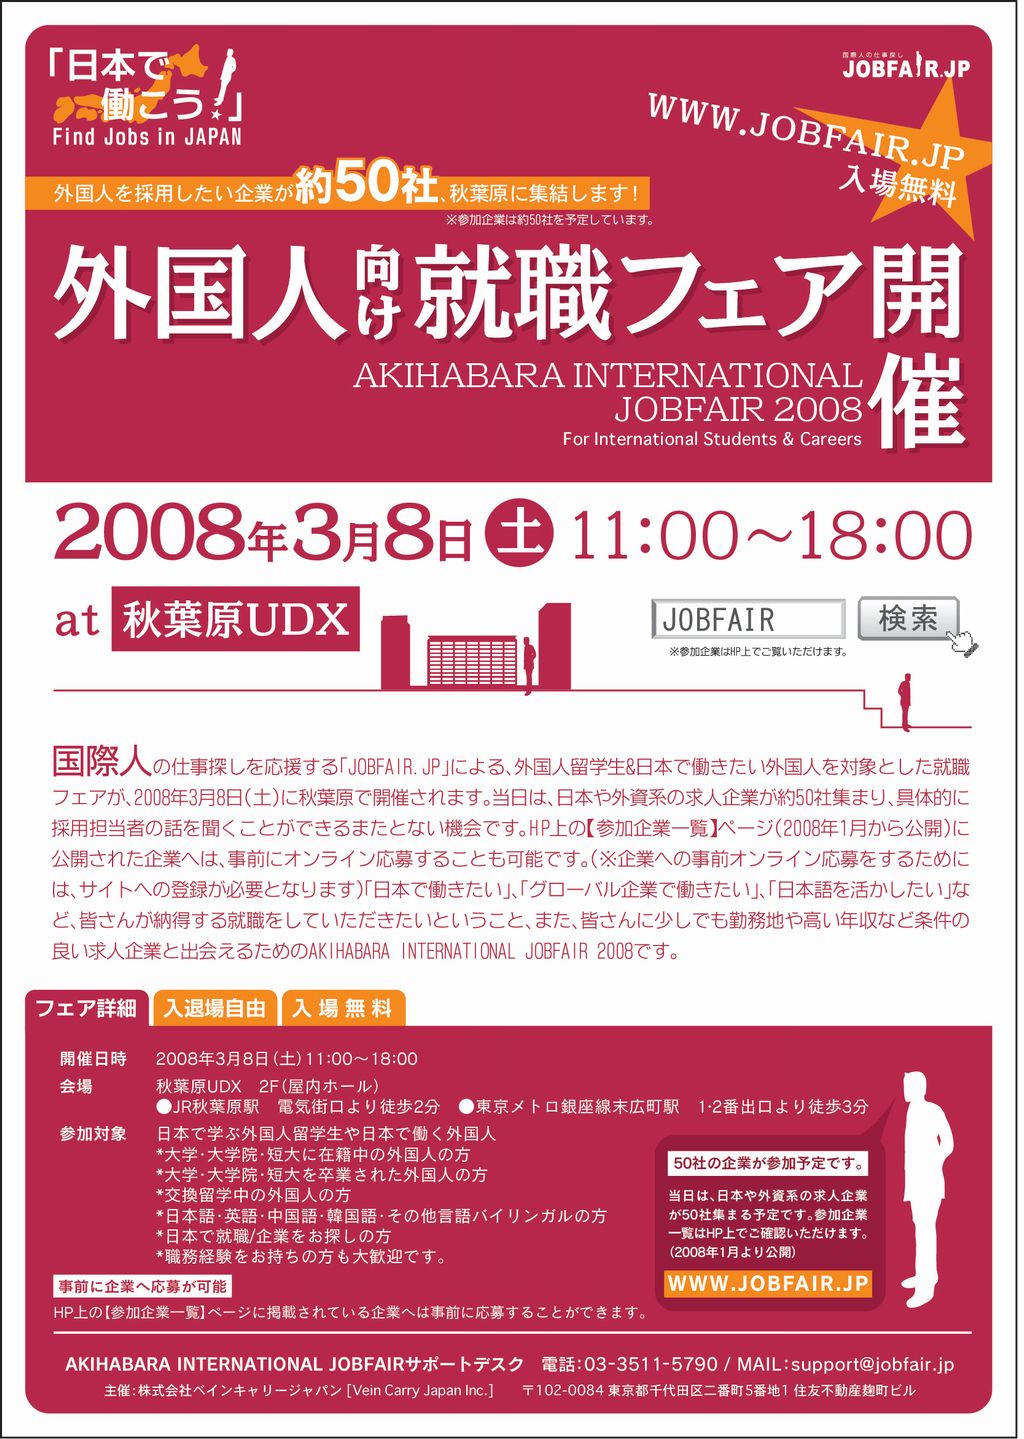 「3月8日外国人留学生向け就職フェア in akiba」を開催！！総合人材コンサルティング会社ベインキャリージャパン